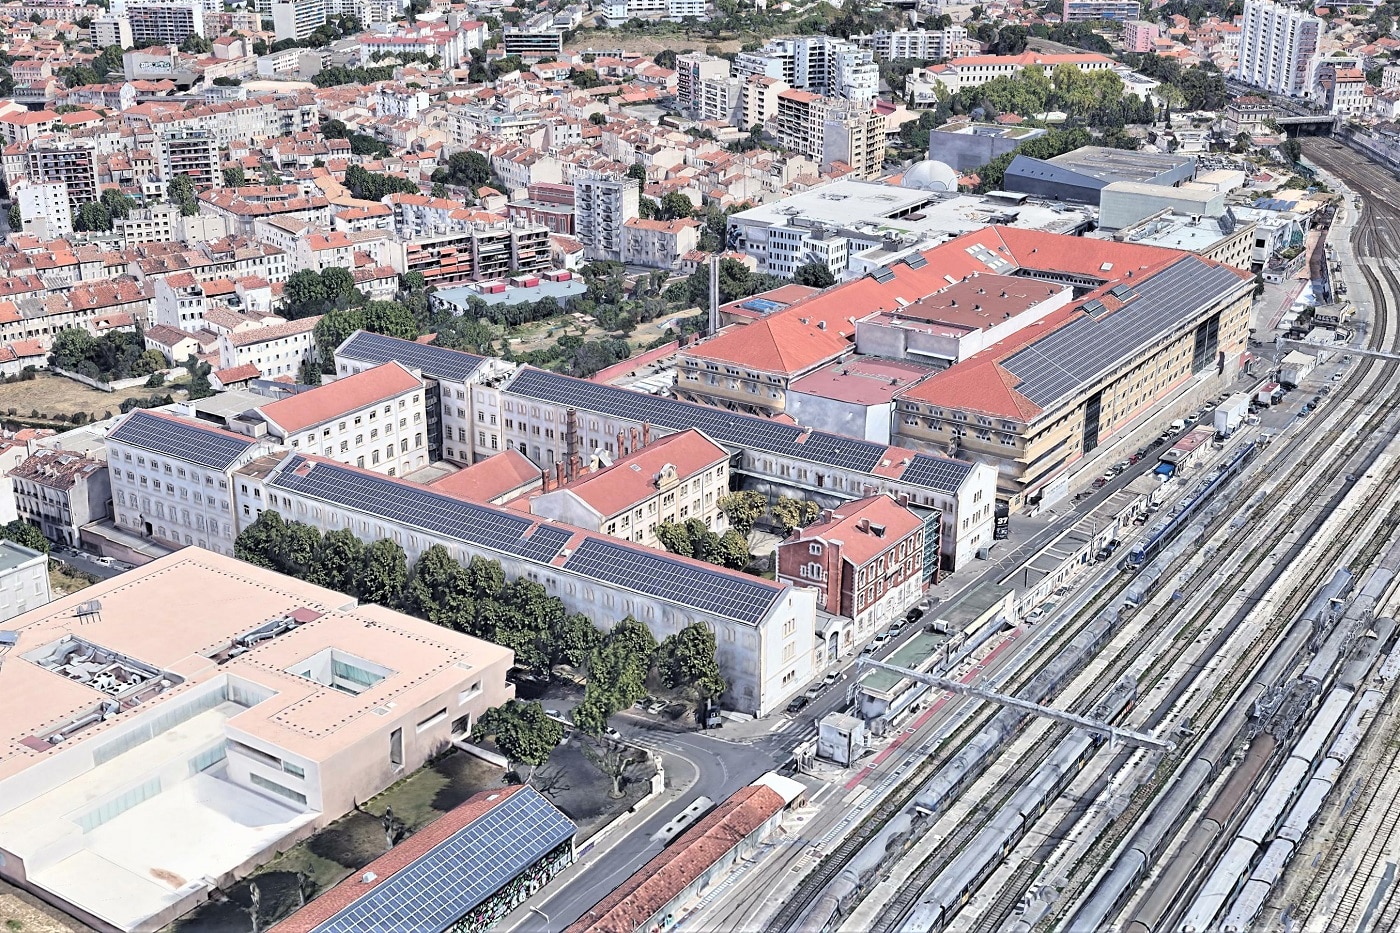 , Priorité aux écoles pour développer les toitures photovoltaïques à Marseille, Made in Marseille